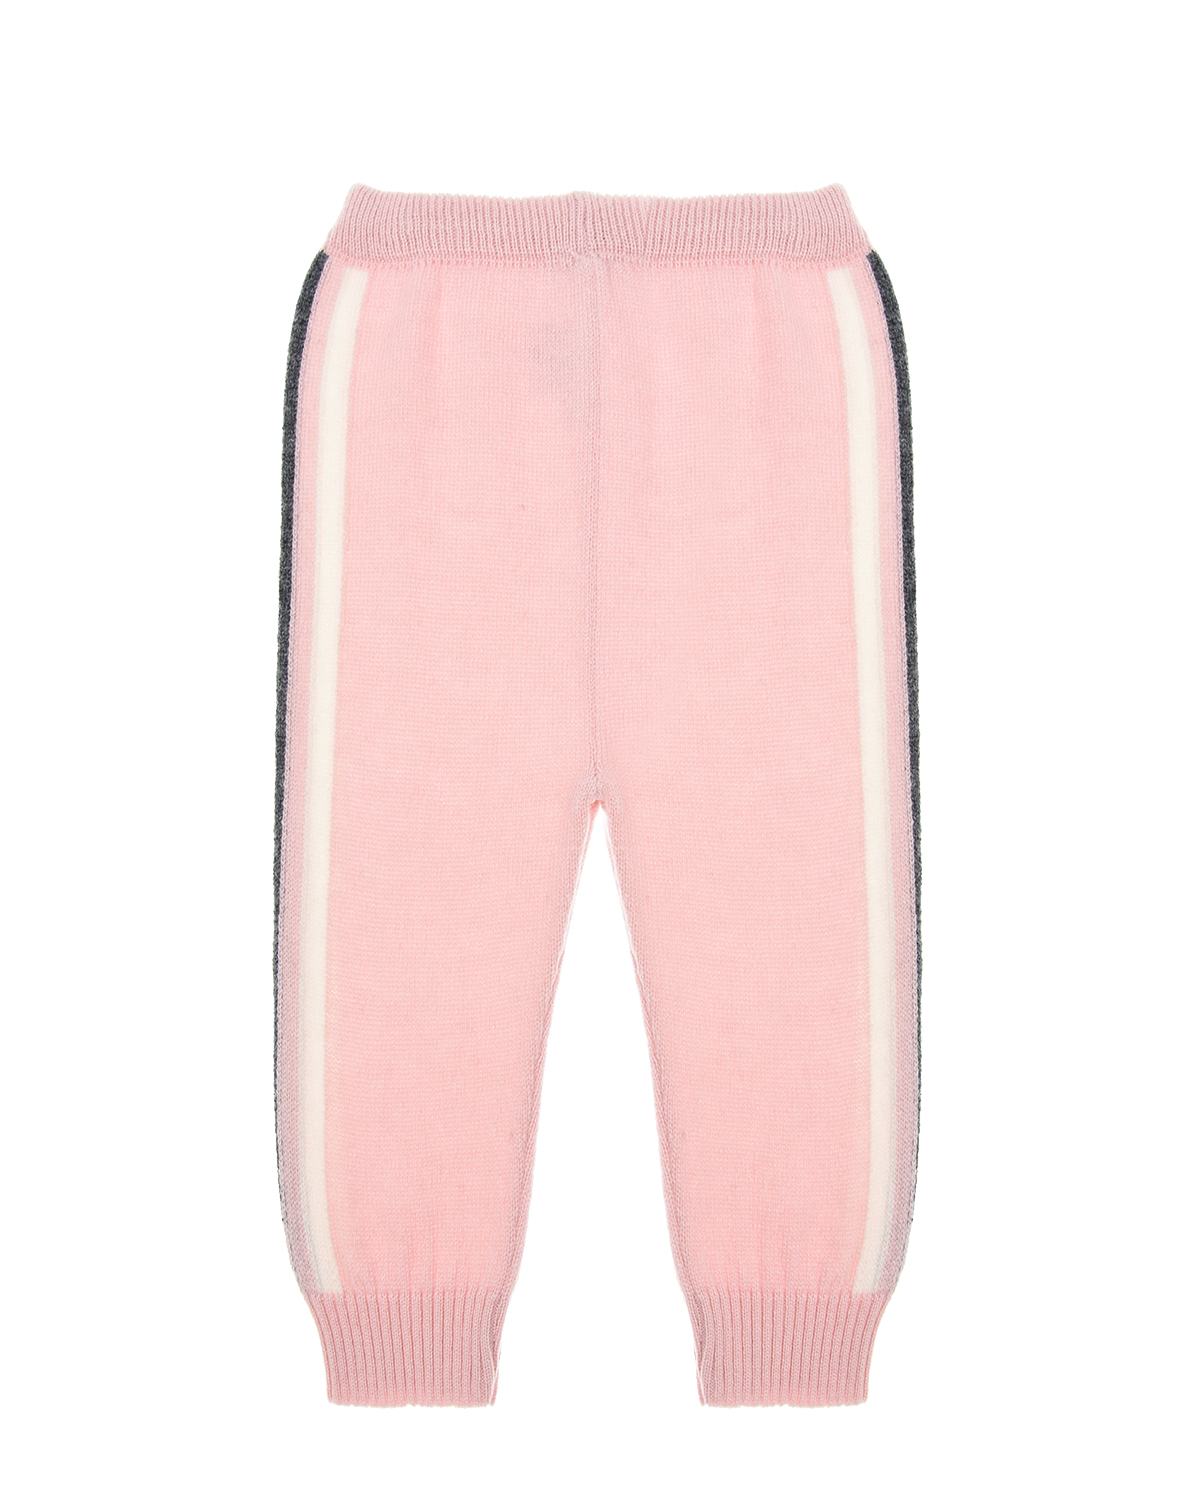 Спортивный костюм из кашемира розового цвета Tomax детский, размер 68 - фото 4